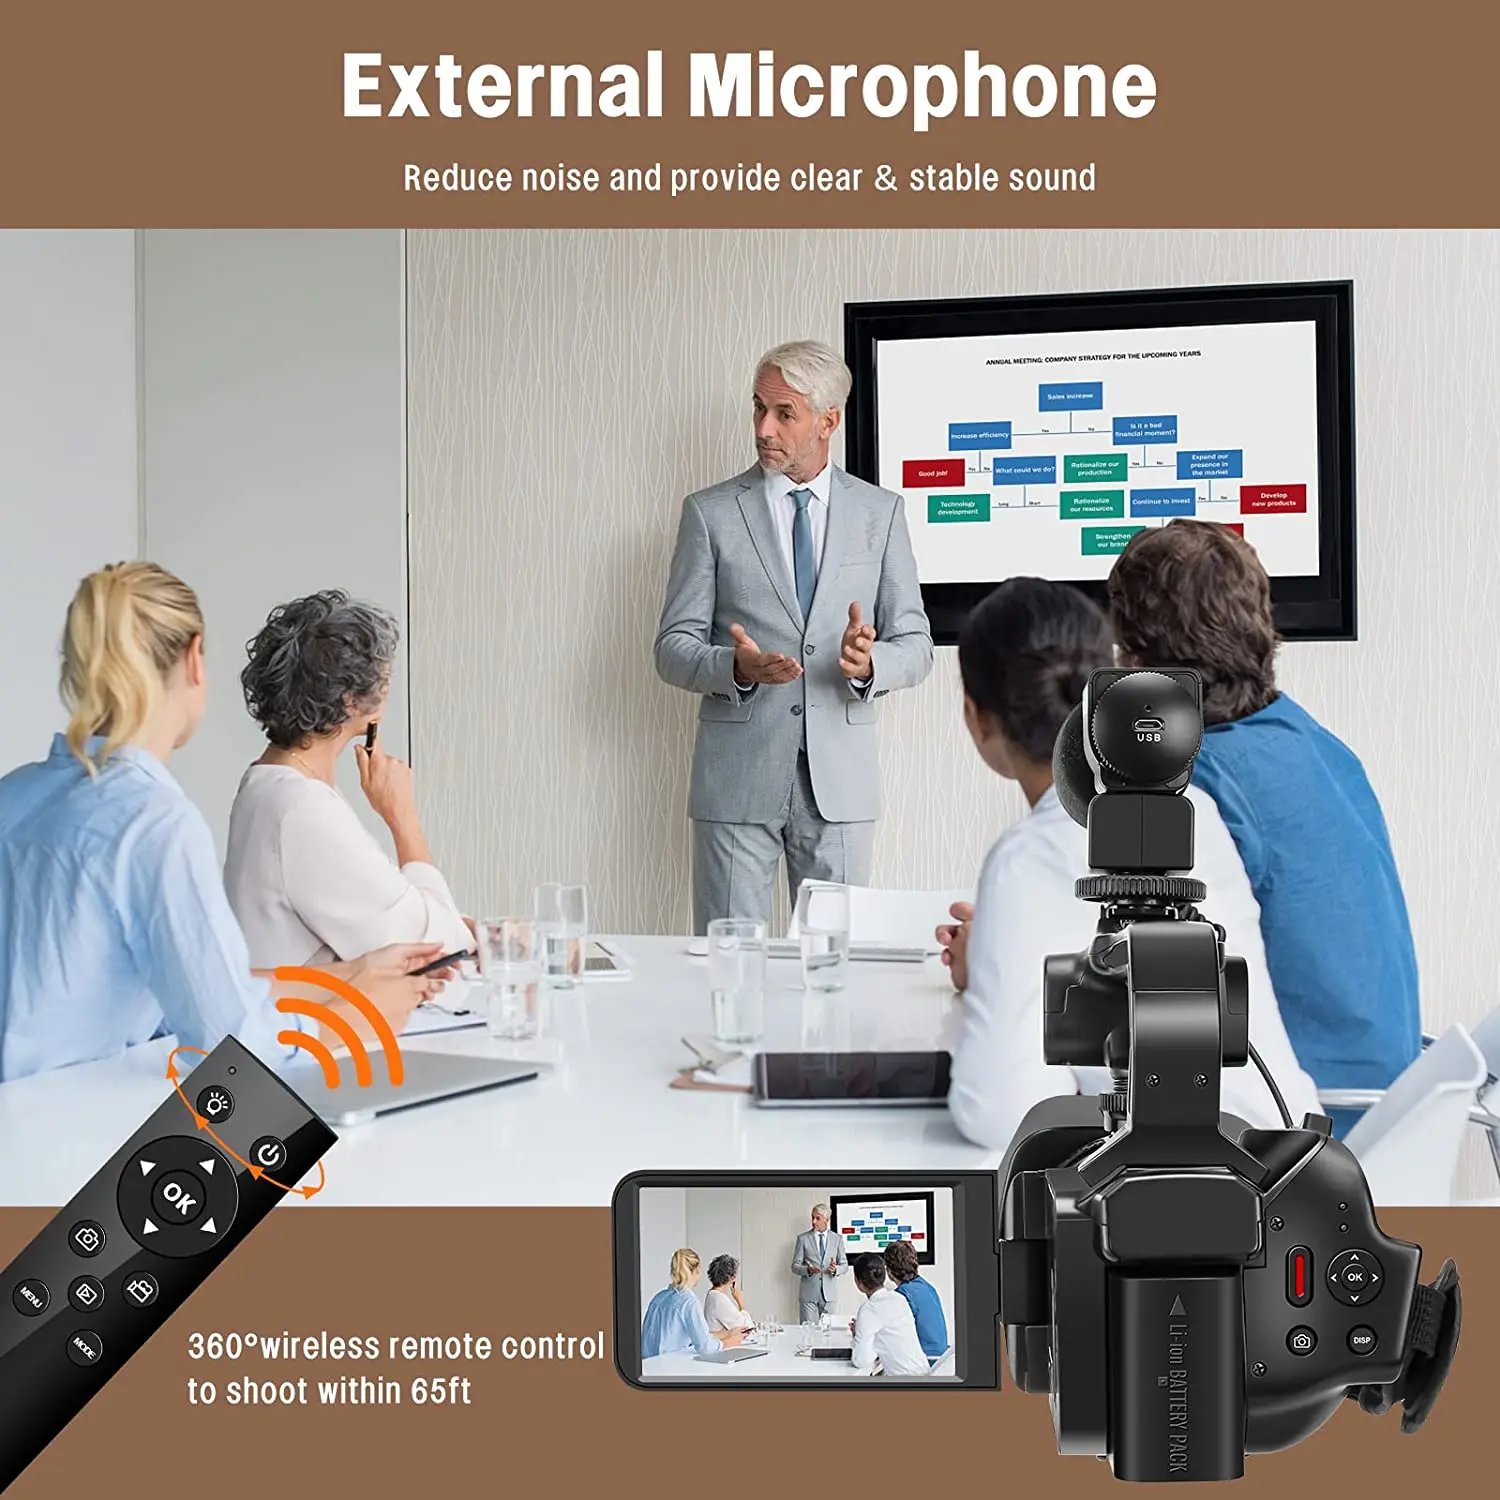 A 4K Professzionális Videokamera YouTube Live HD kamera, Videokamera Streaming Kamera 4.0